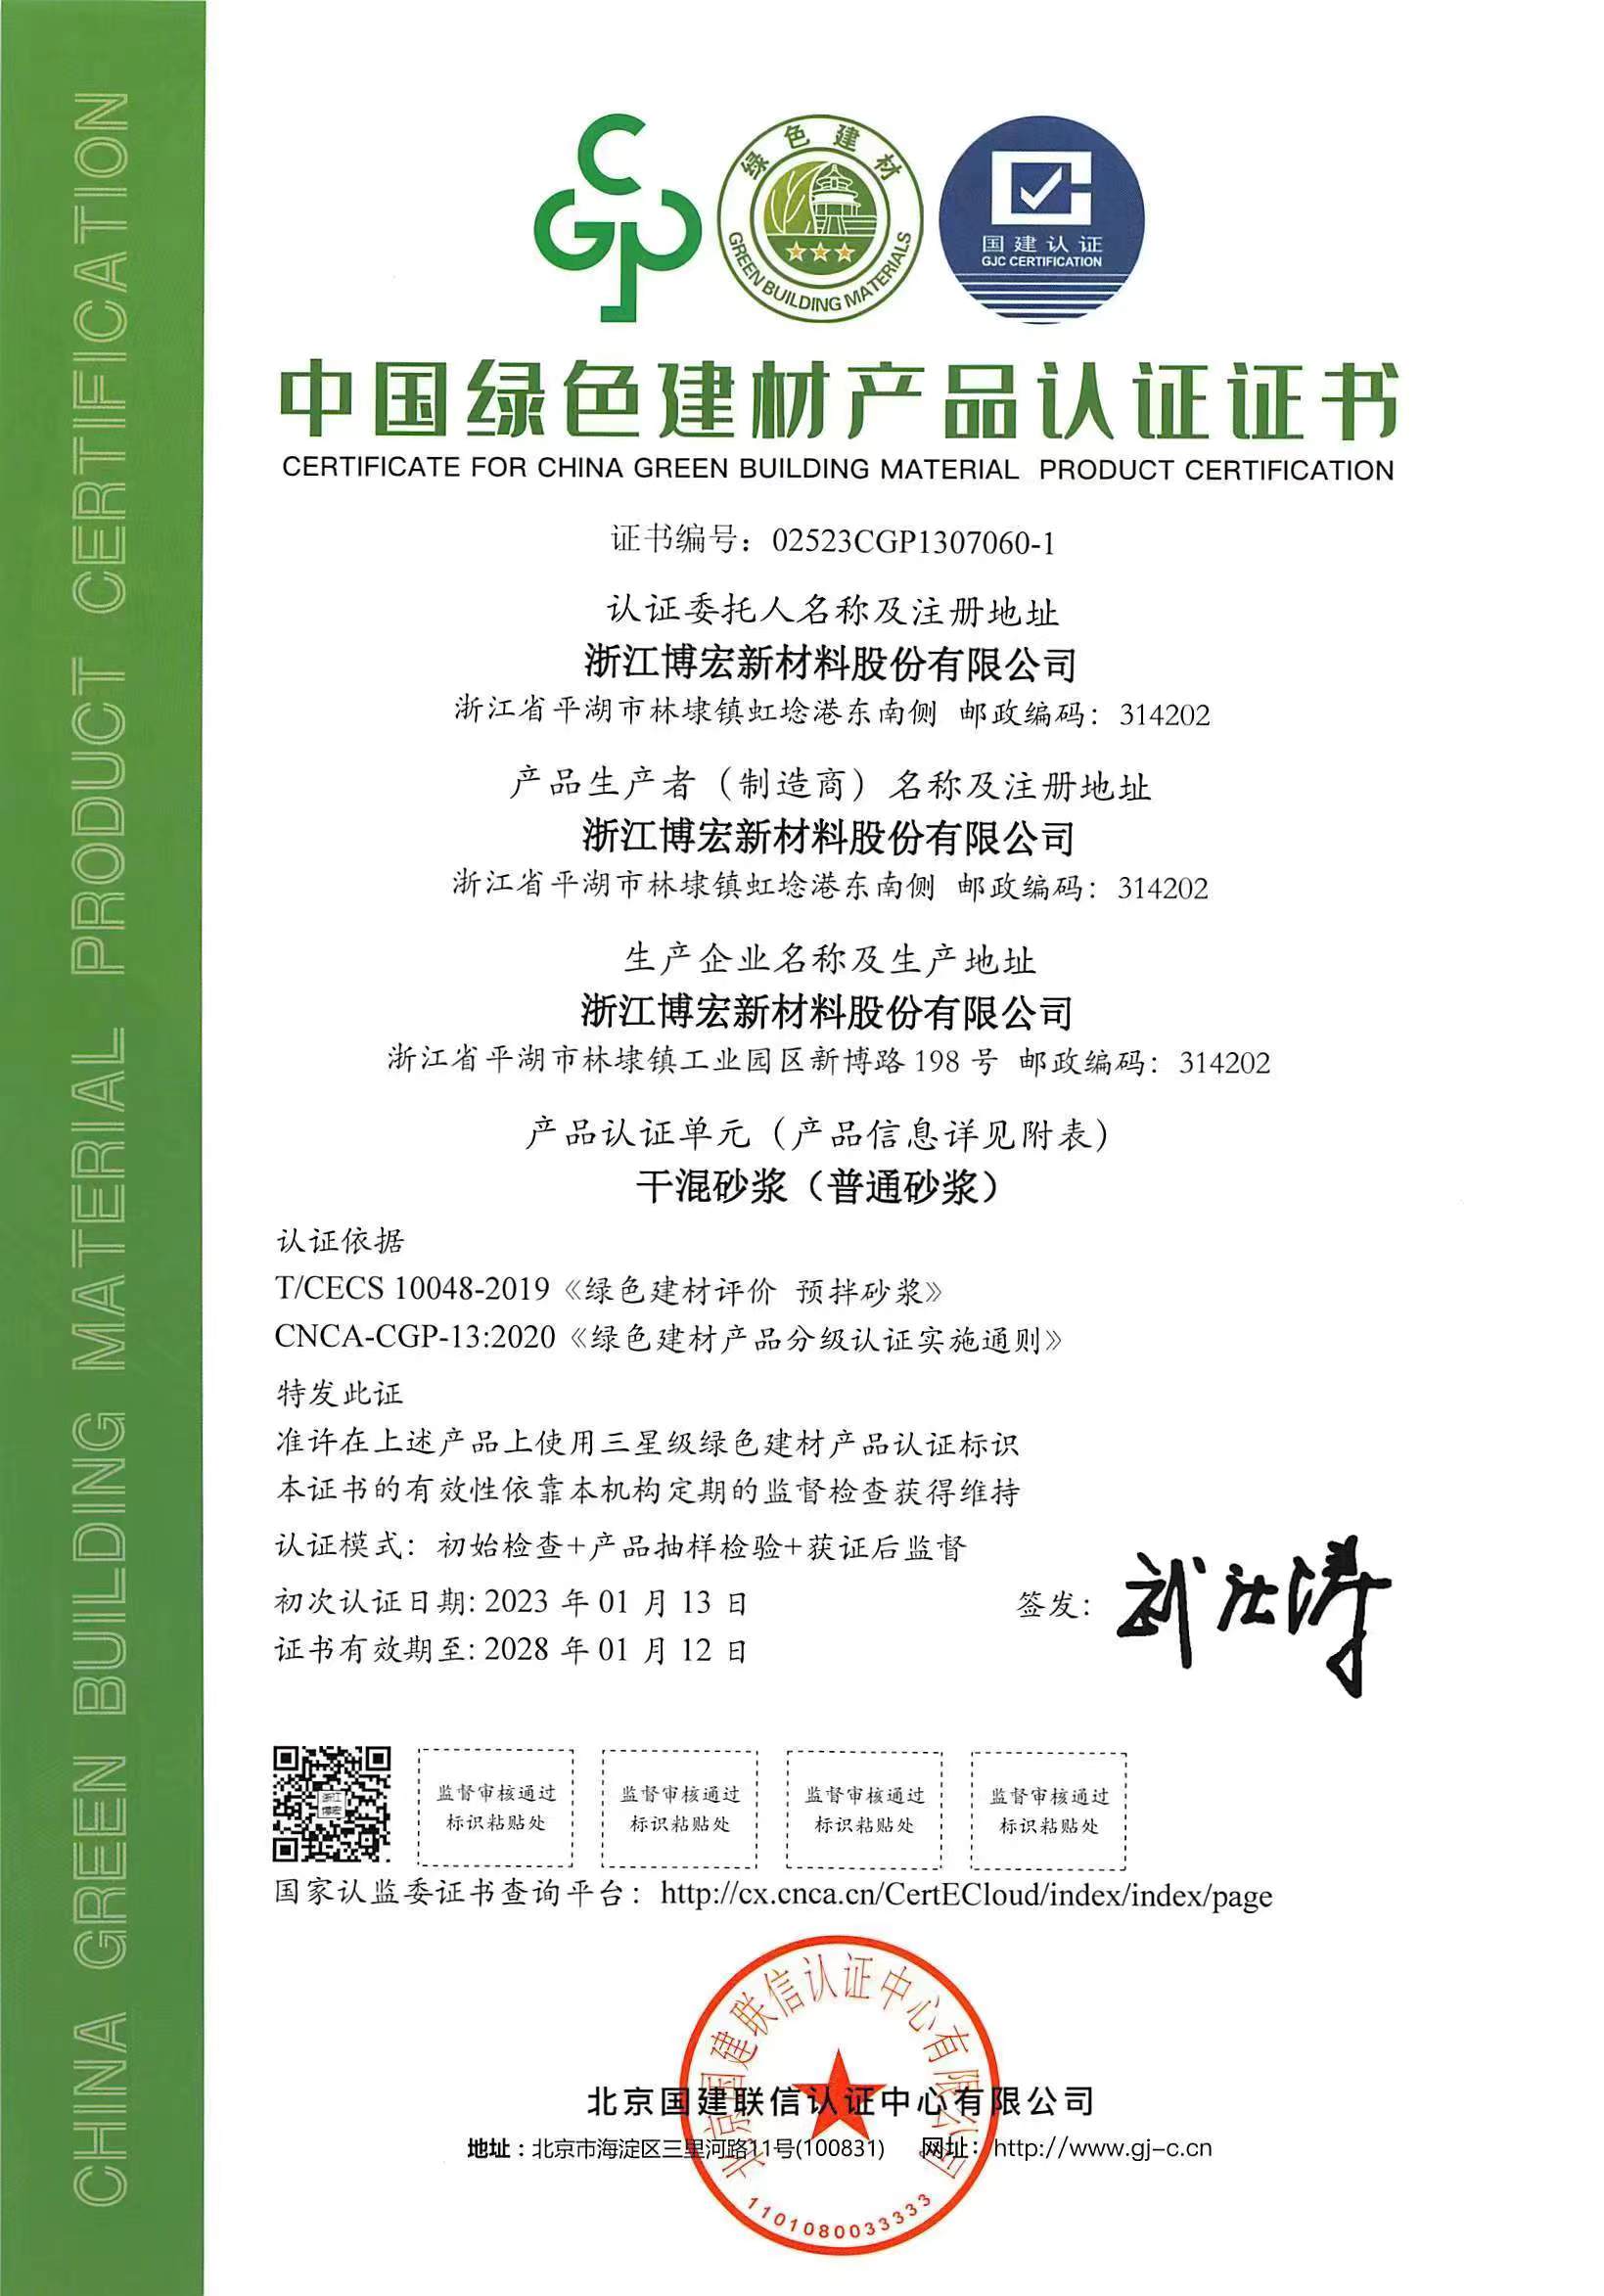 浙江博宏公司干混砂浆产品系列通过中国绿色建材产品三星级认证